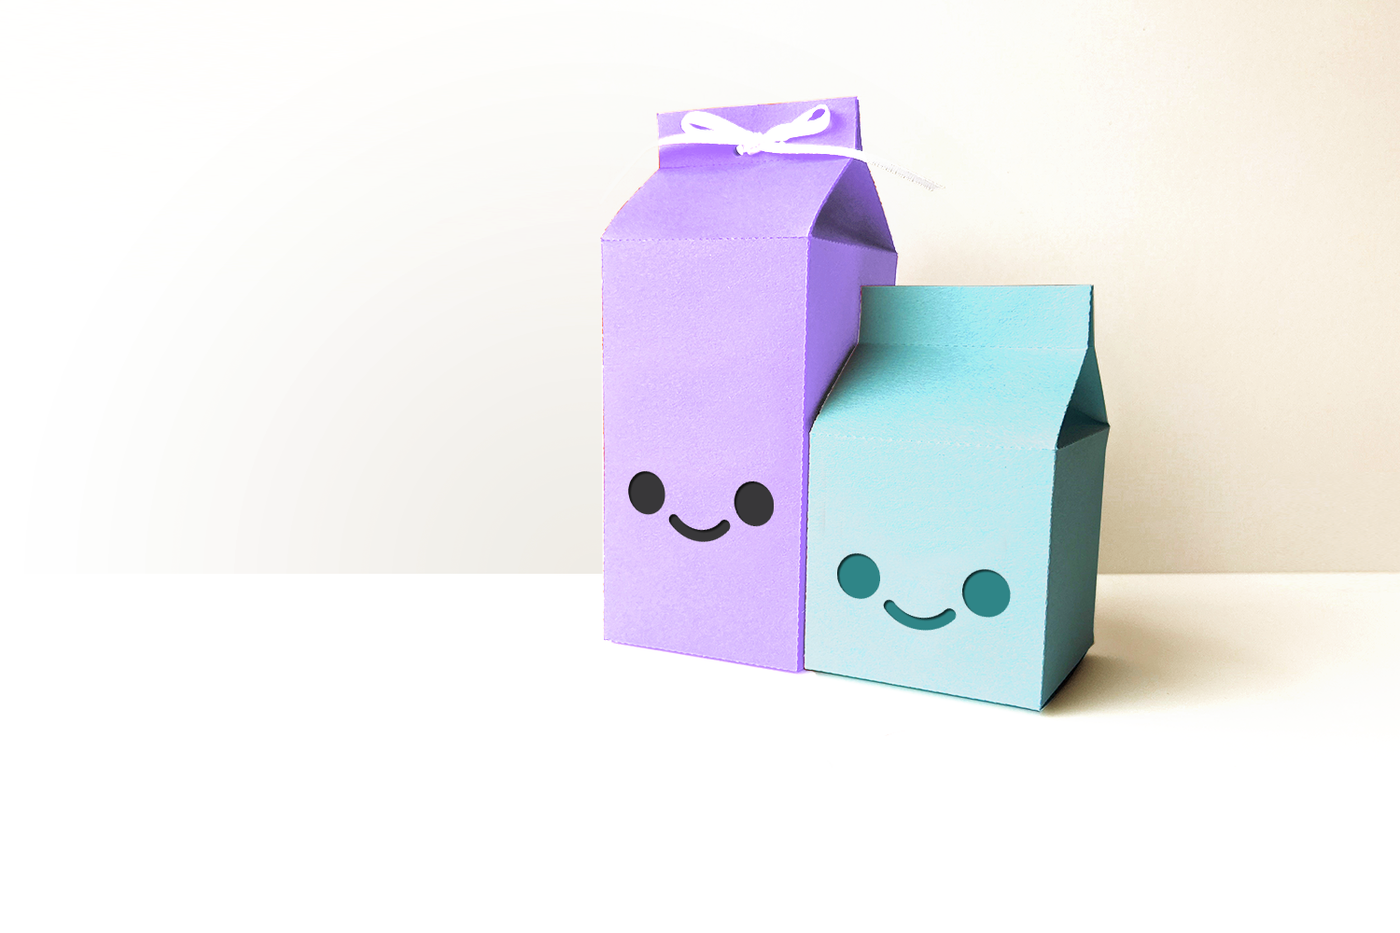 Kawaii face milk carton SVG designs